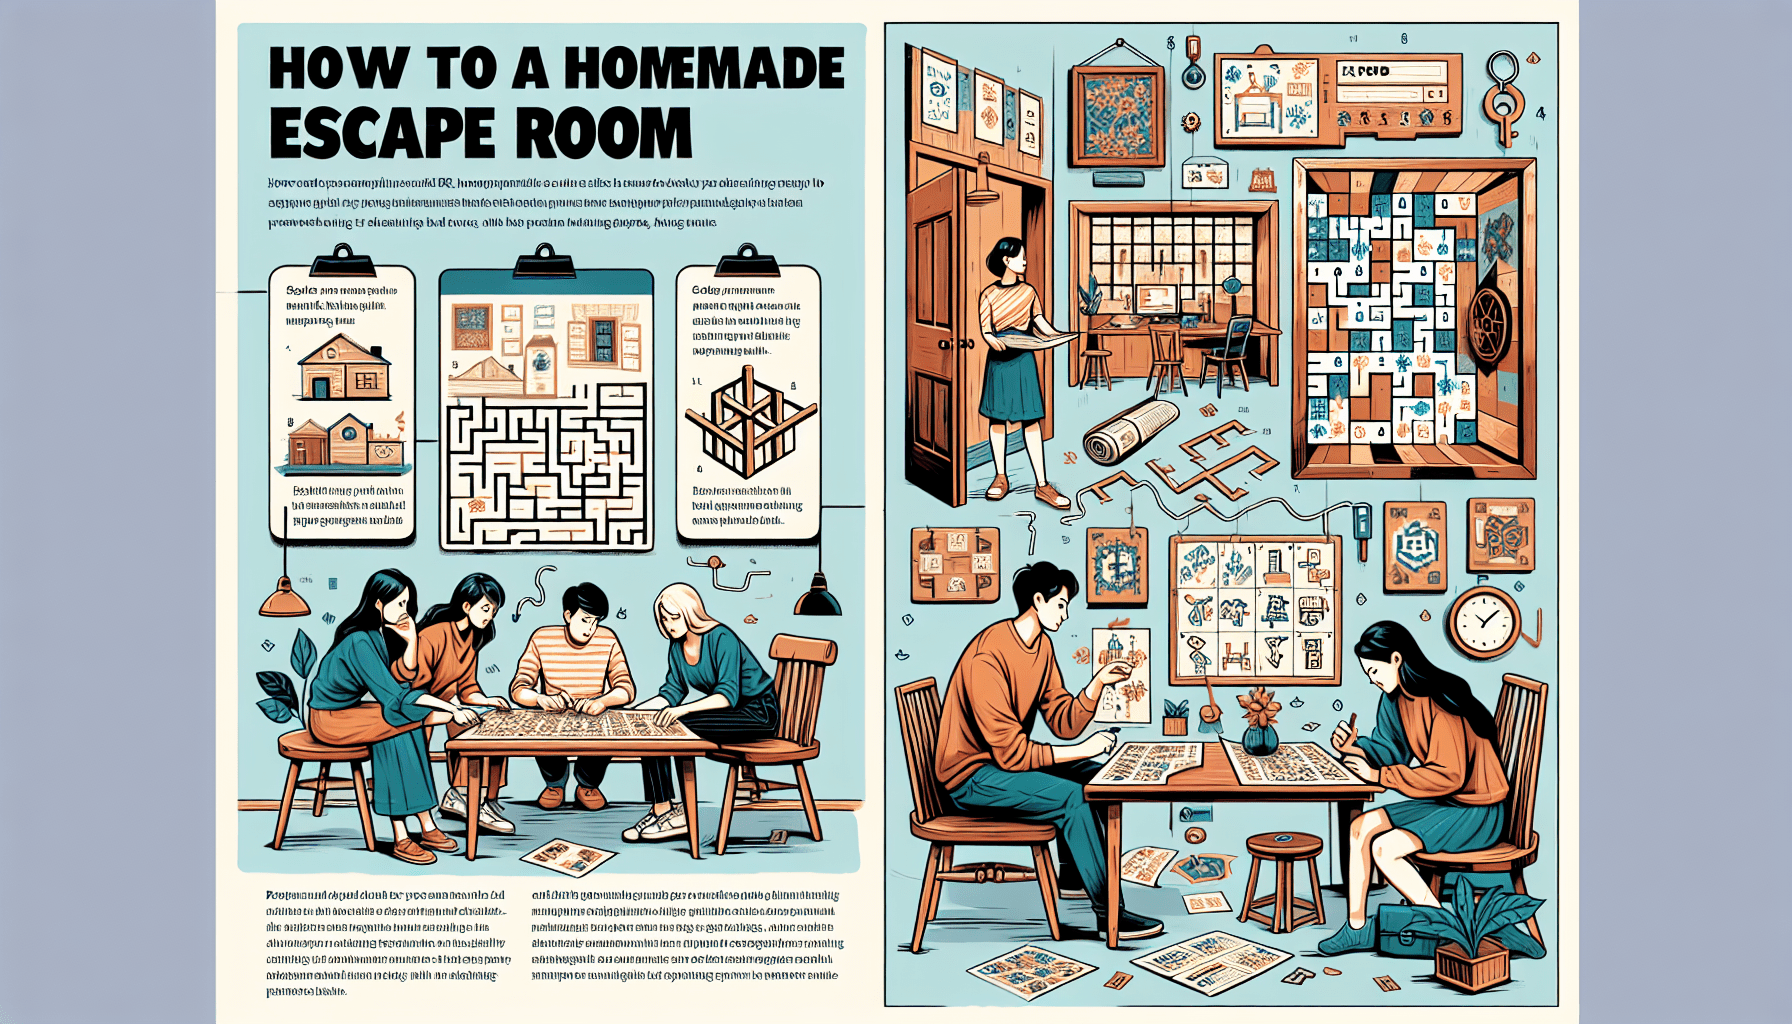 How Do You Make A Homemade Escape Room?